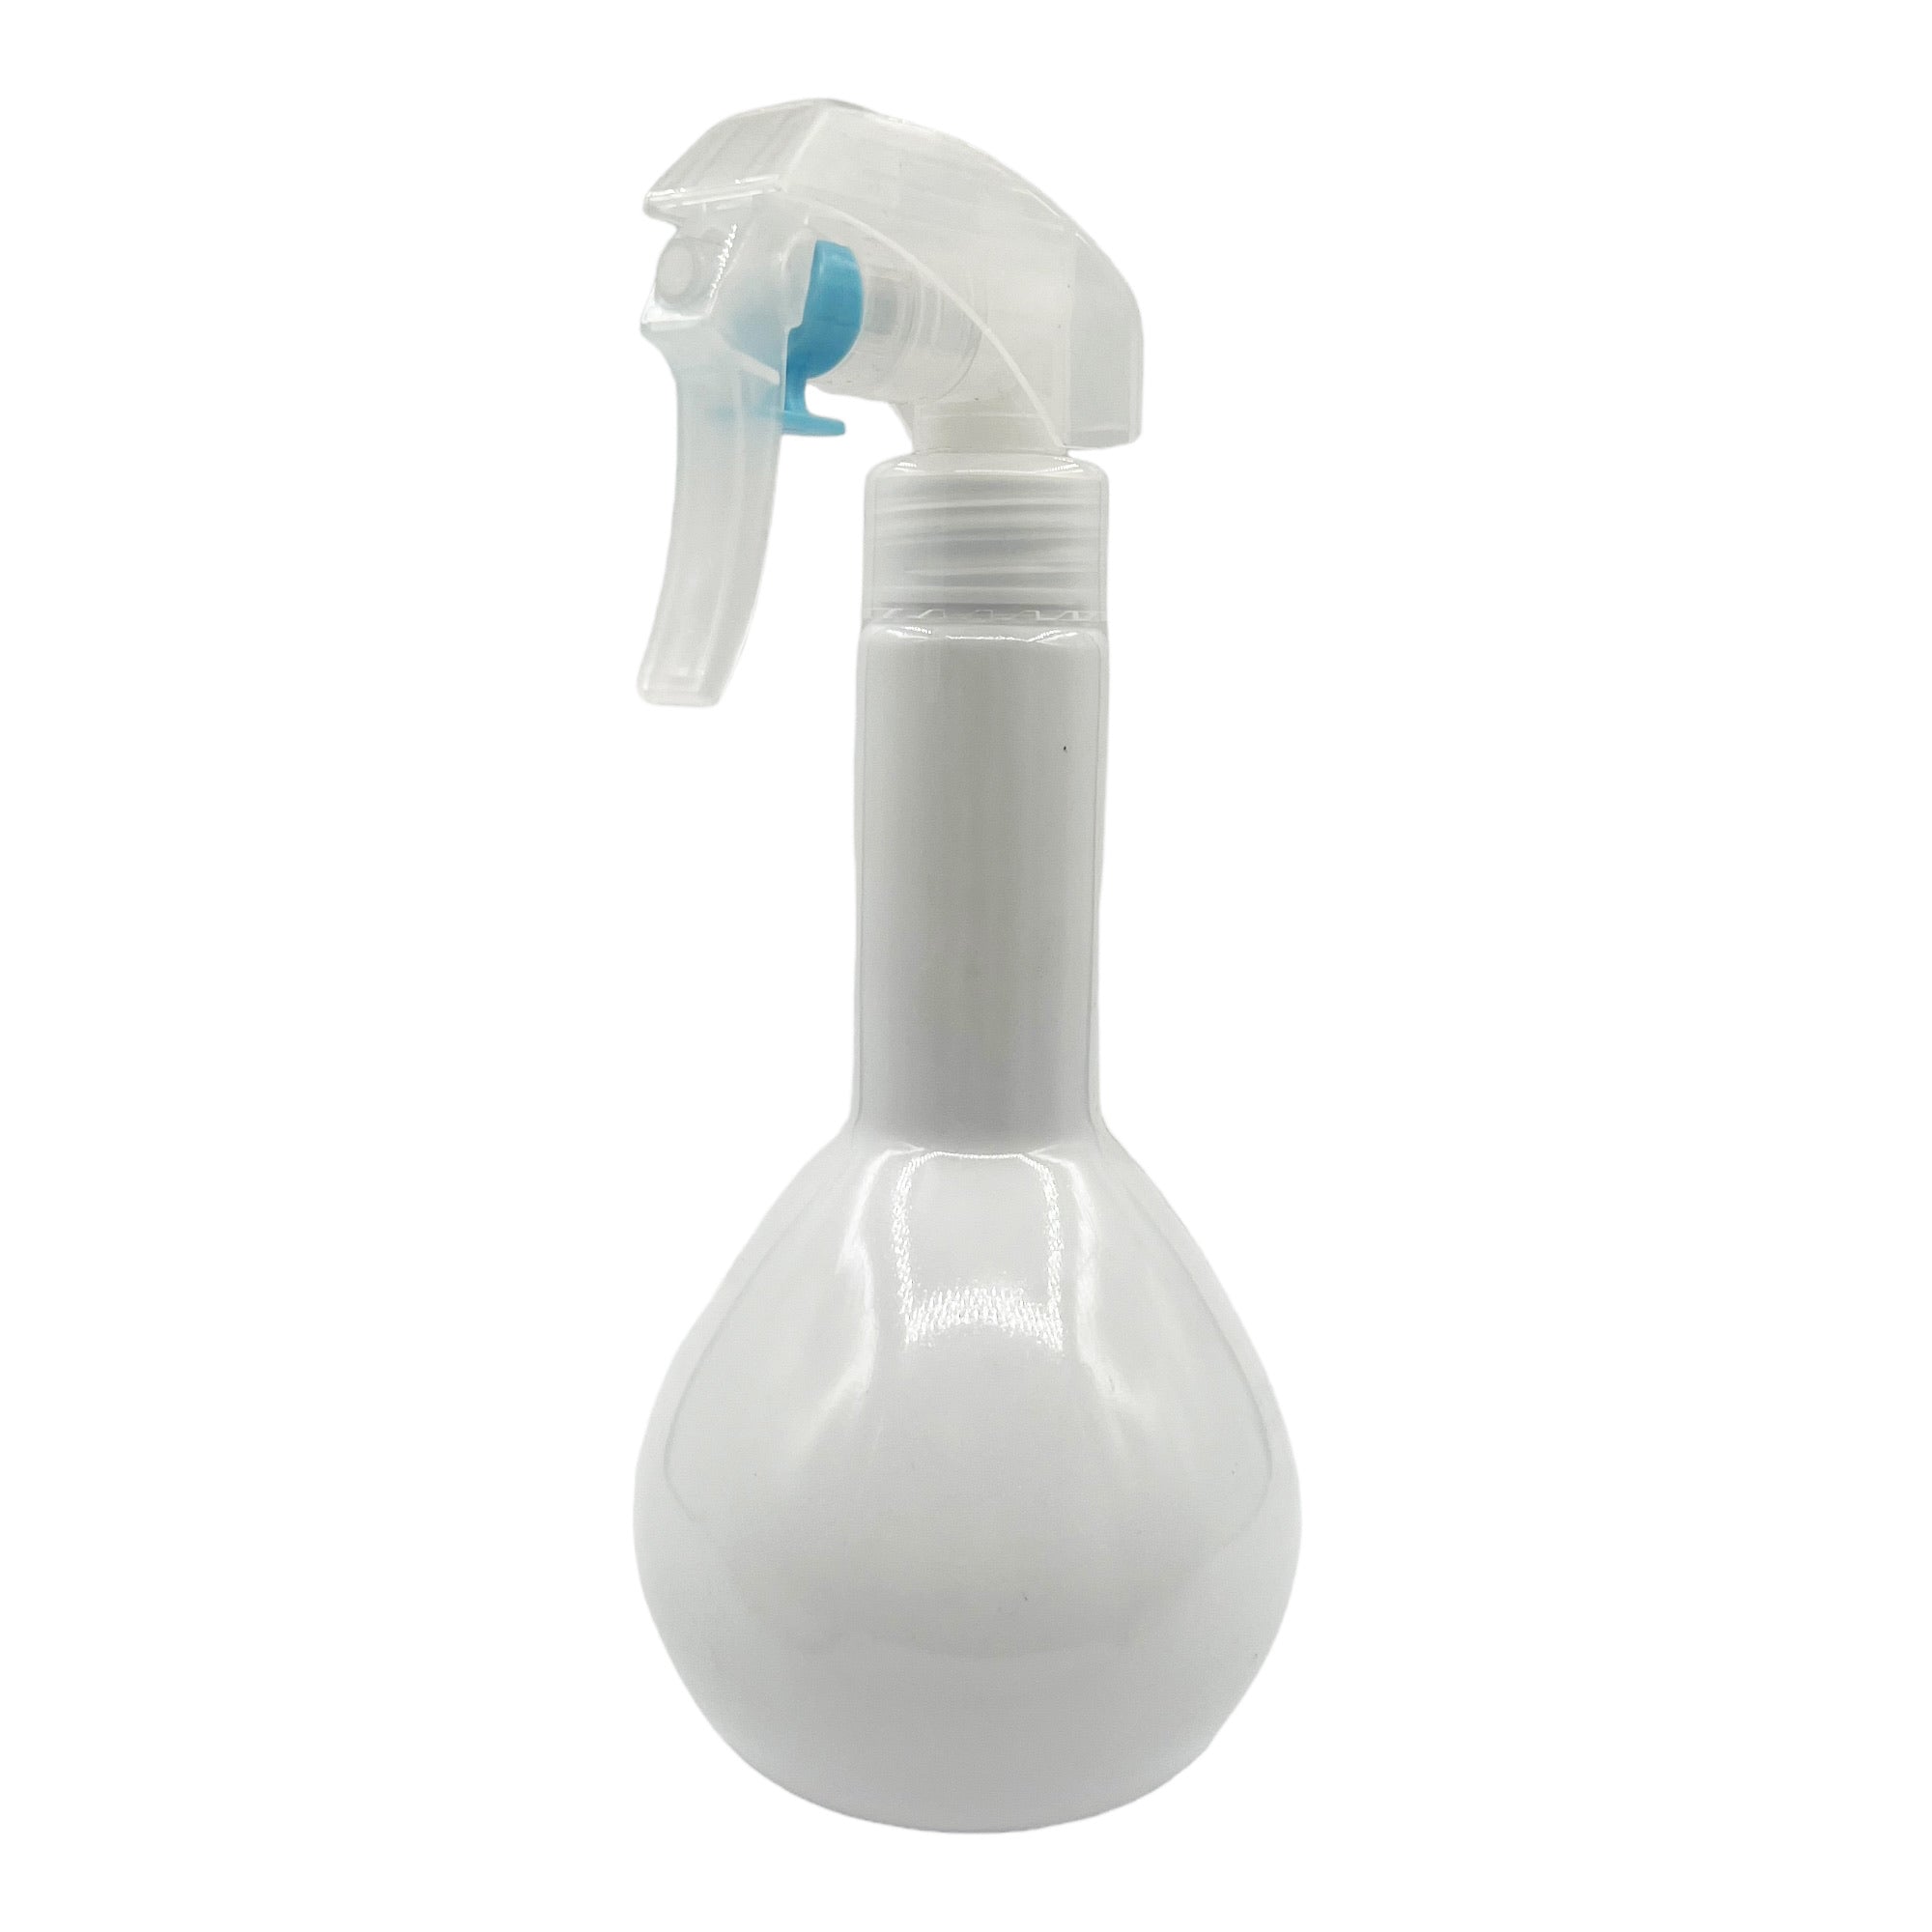 Eson - Water Spray Bottle 300ml Round Empty Refillable Ultra Fine Mist Sprayer (White)